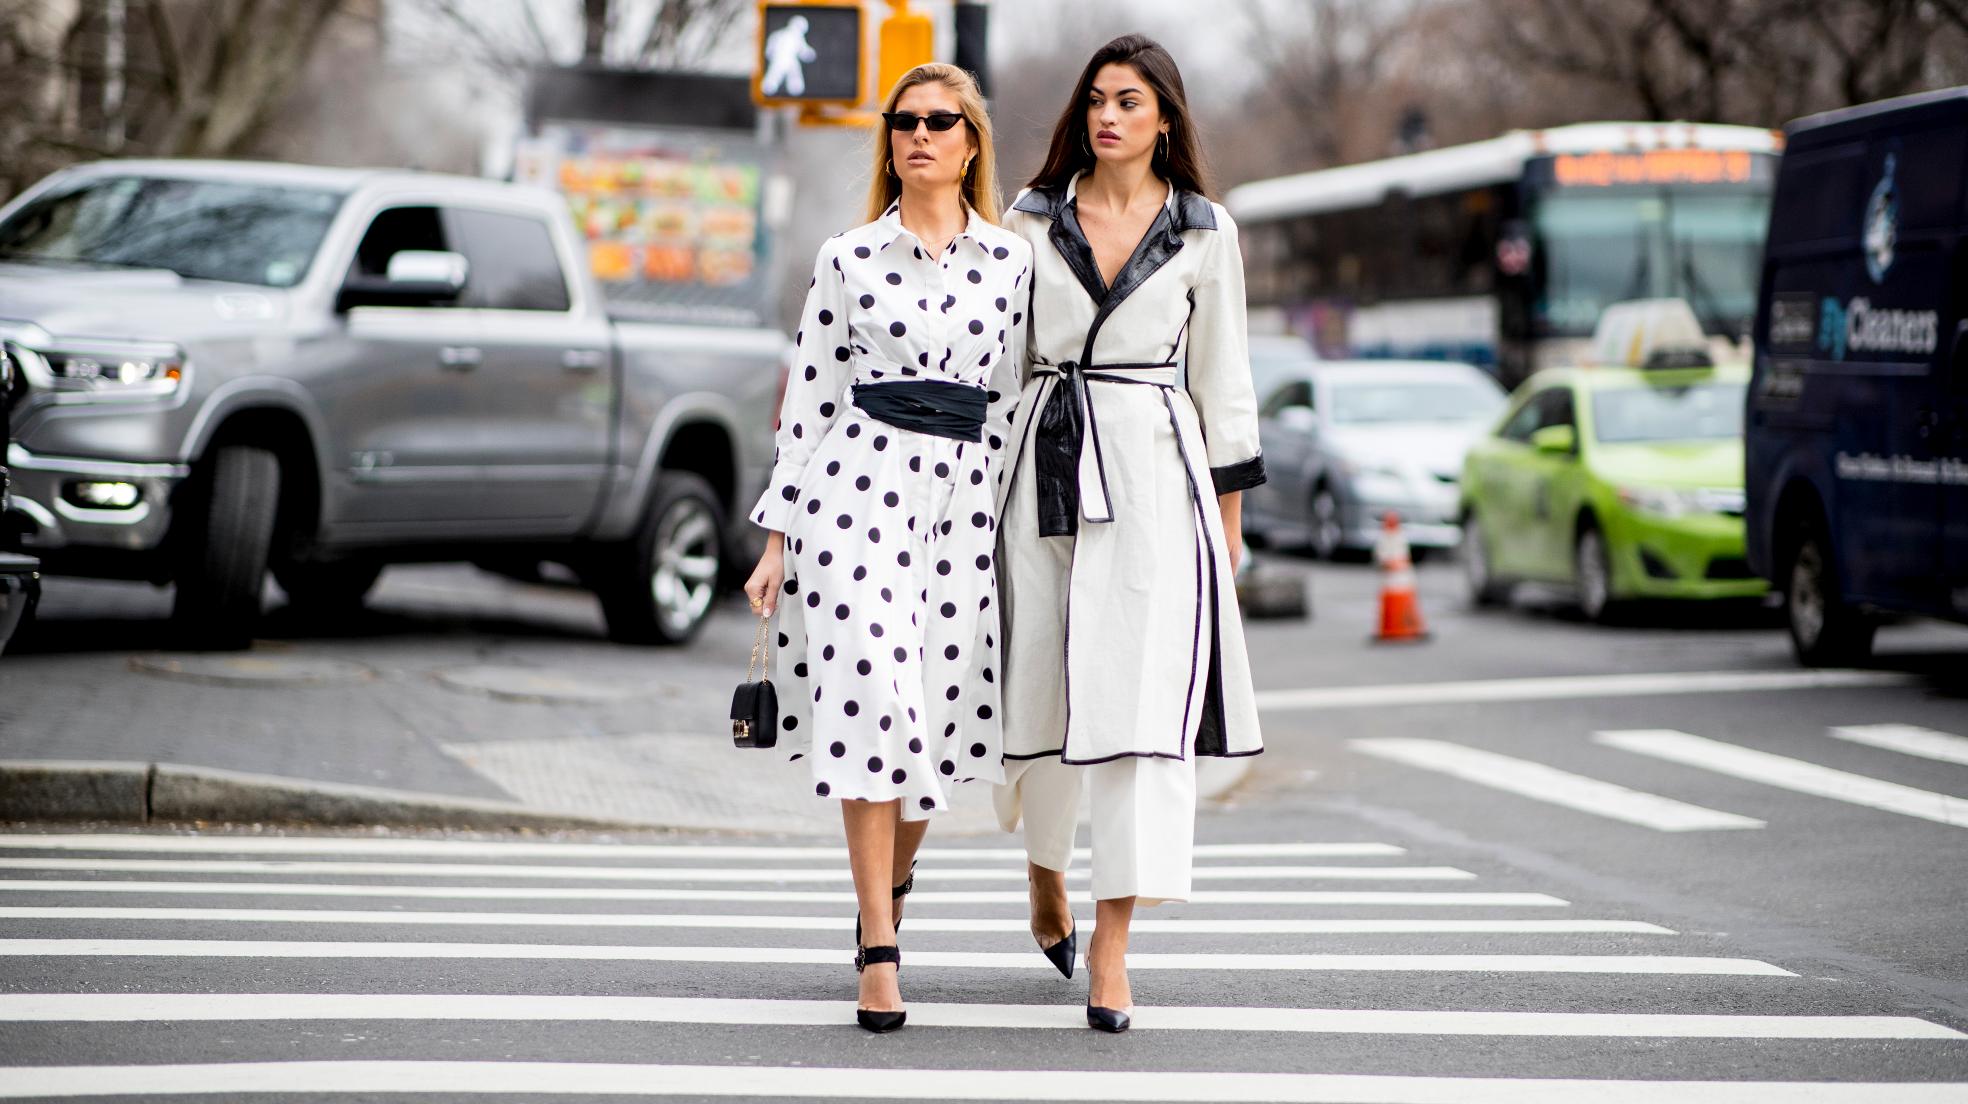 Los vestidos de lunares de la nueva colección de Zara que van a arrasar en Instagram (y otros looks sumarte la tendencia) | Mujer Hoy